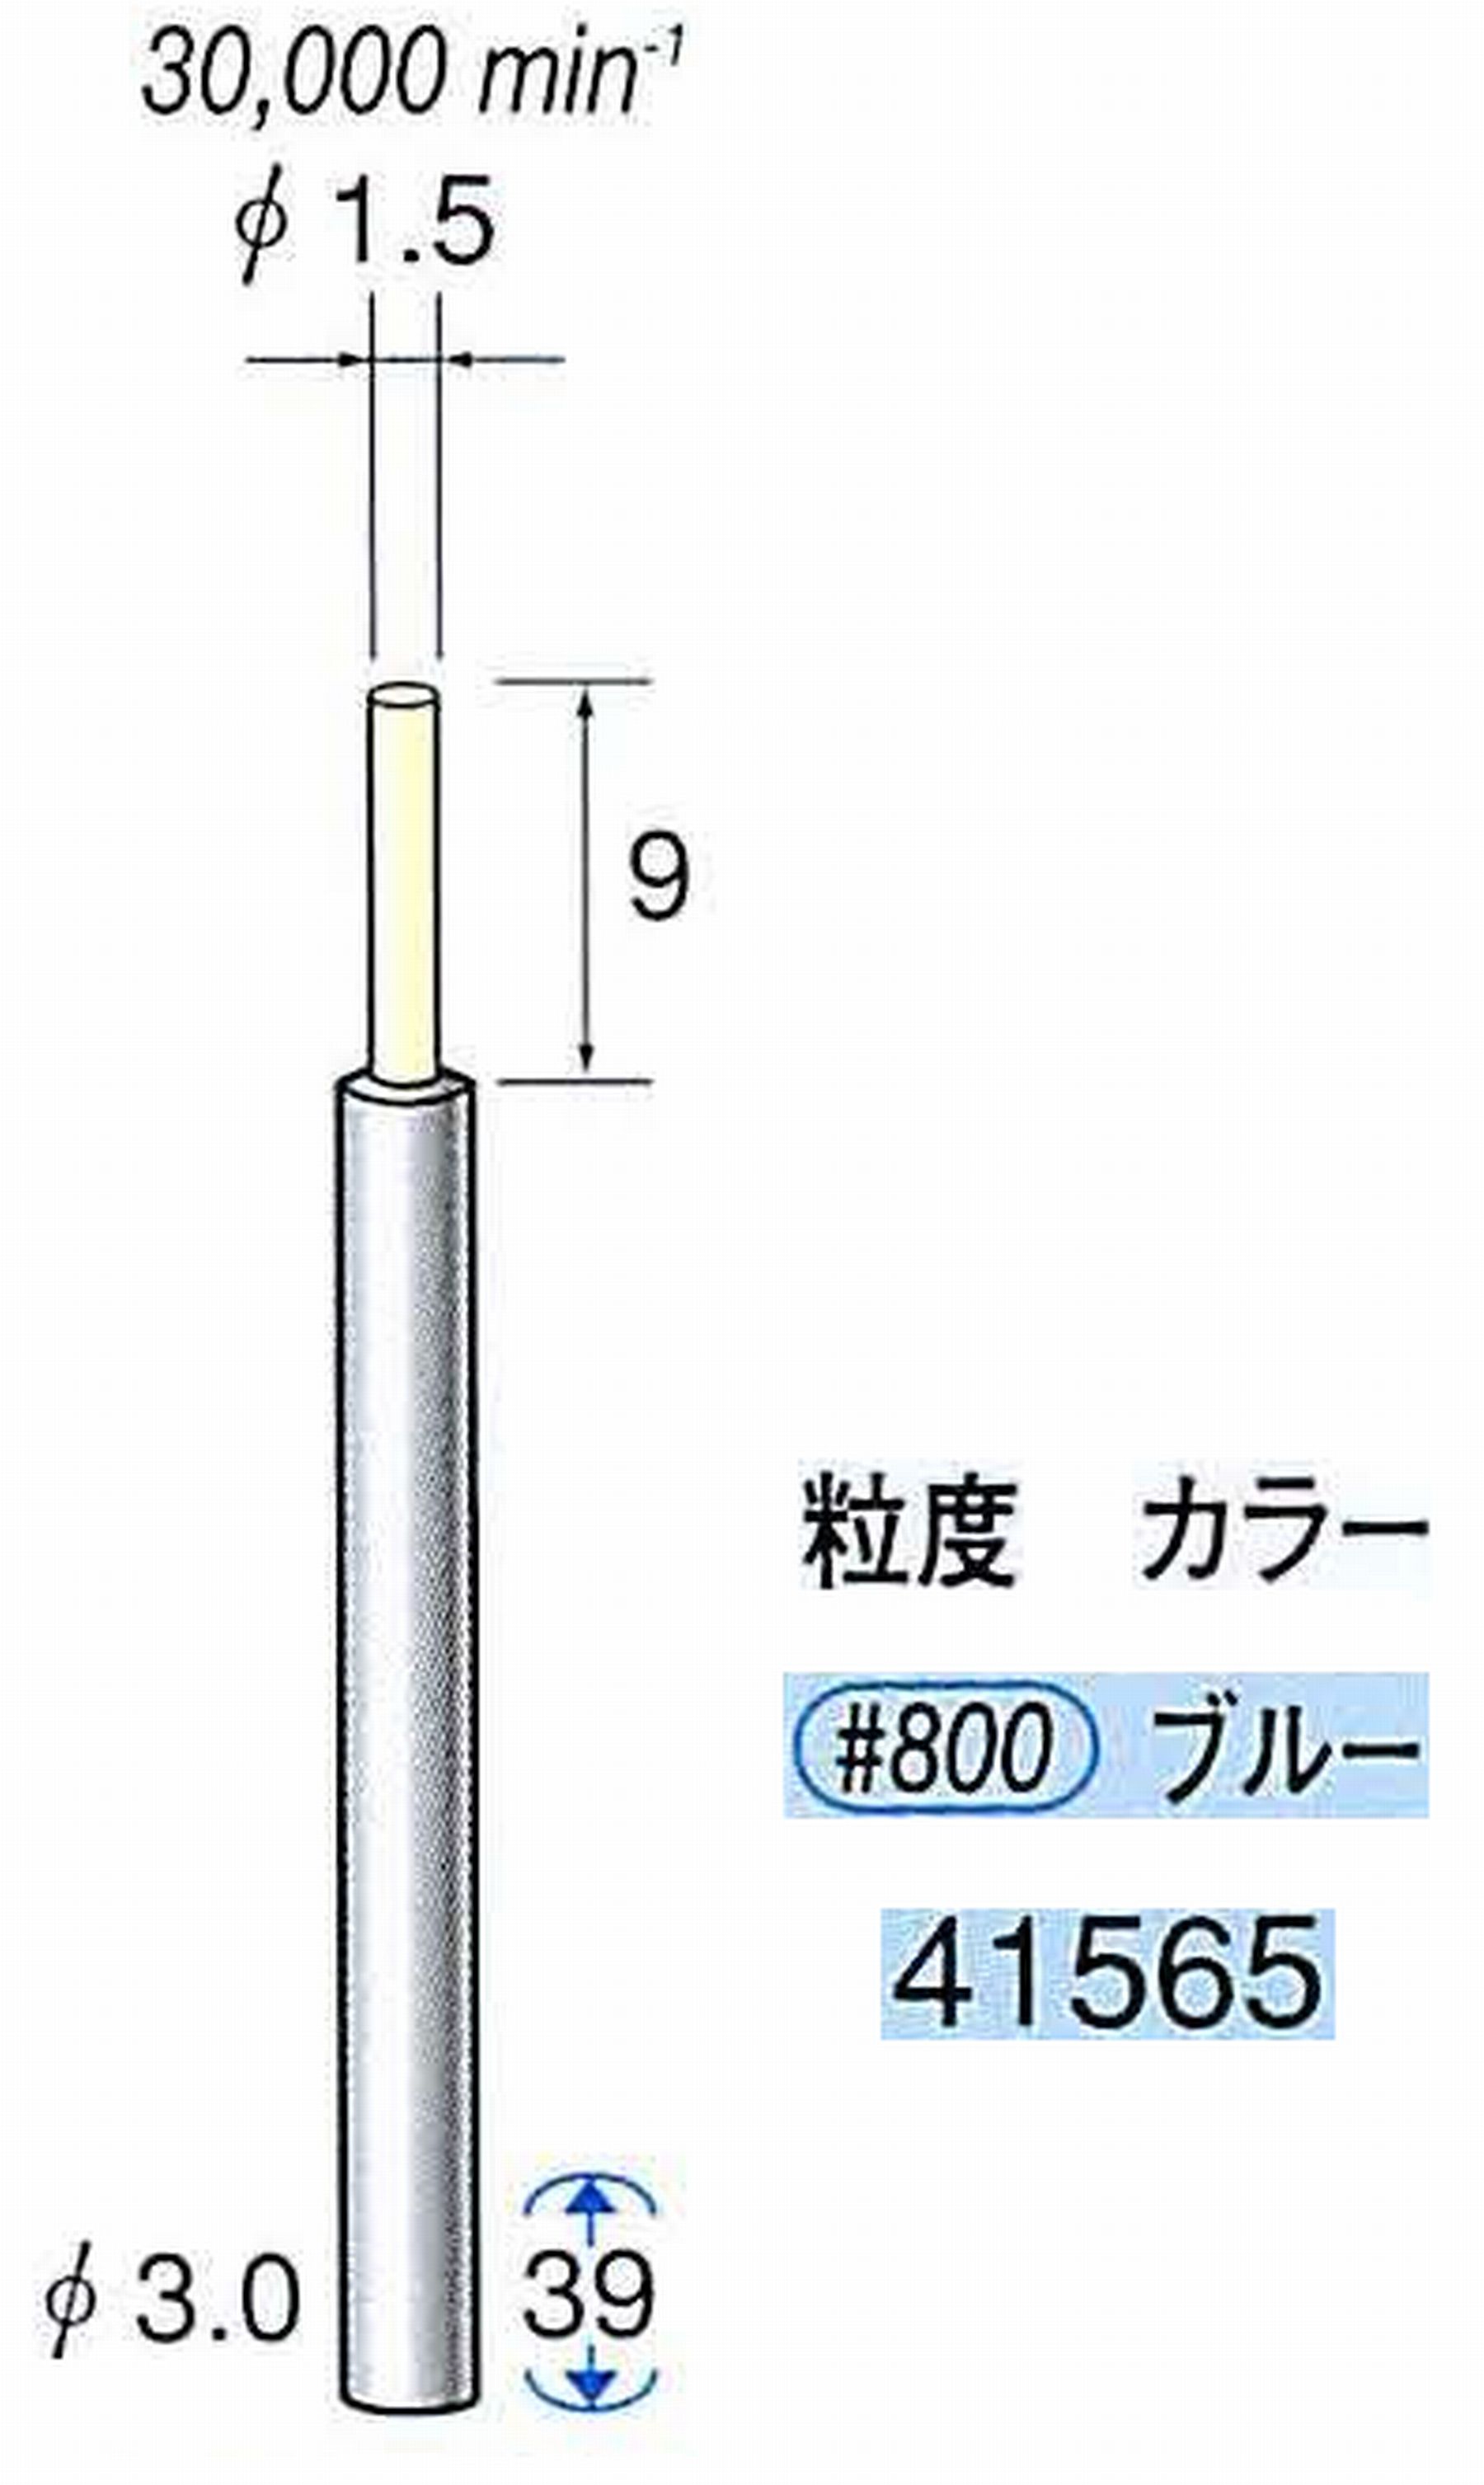 ナカニシ/NAKANISHI セラファイバー精密軸付砥石(カラー ブルー) 軸径(シャンク) φ3.0mm 41565